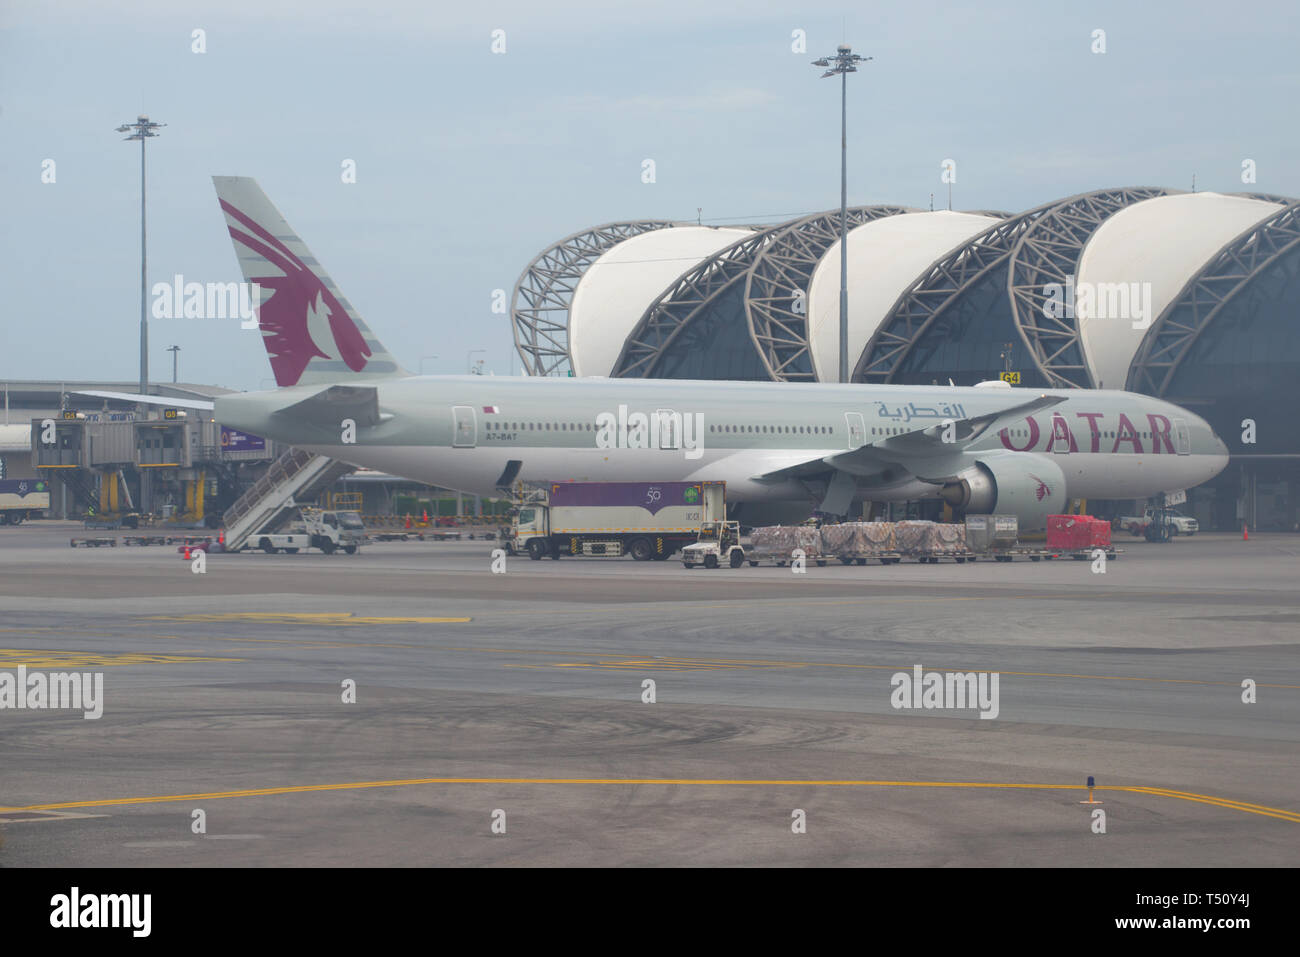 Qatar Airways Boeing 777 Stock Photos & Qatar Airways